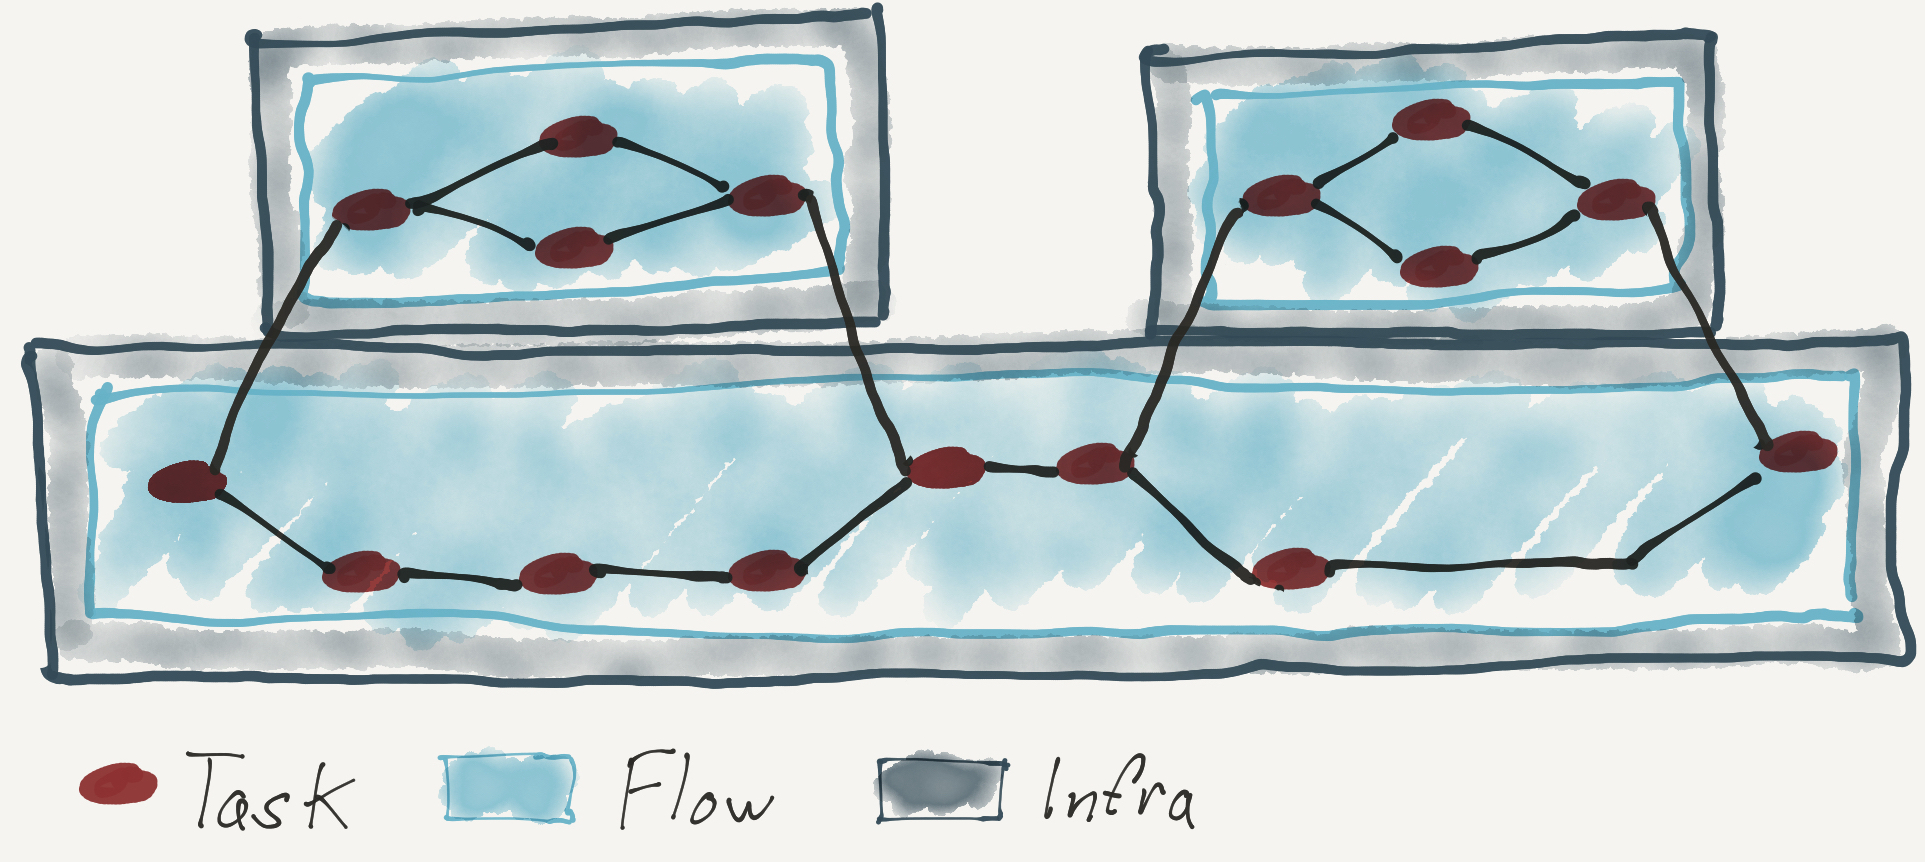 Dataflow Design Patterns